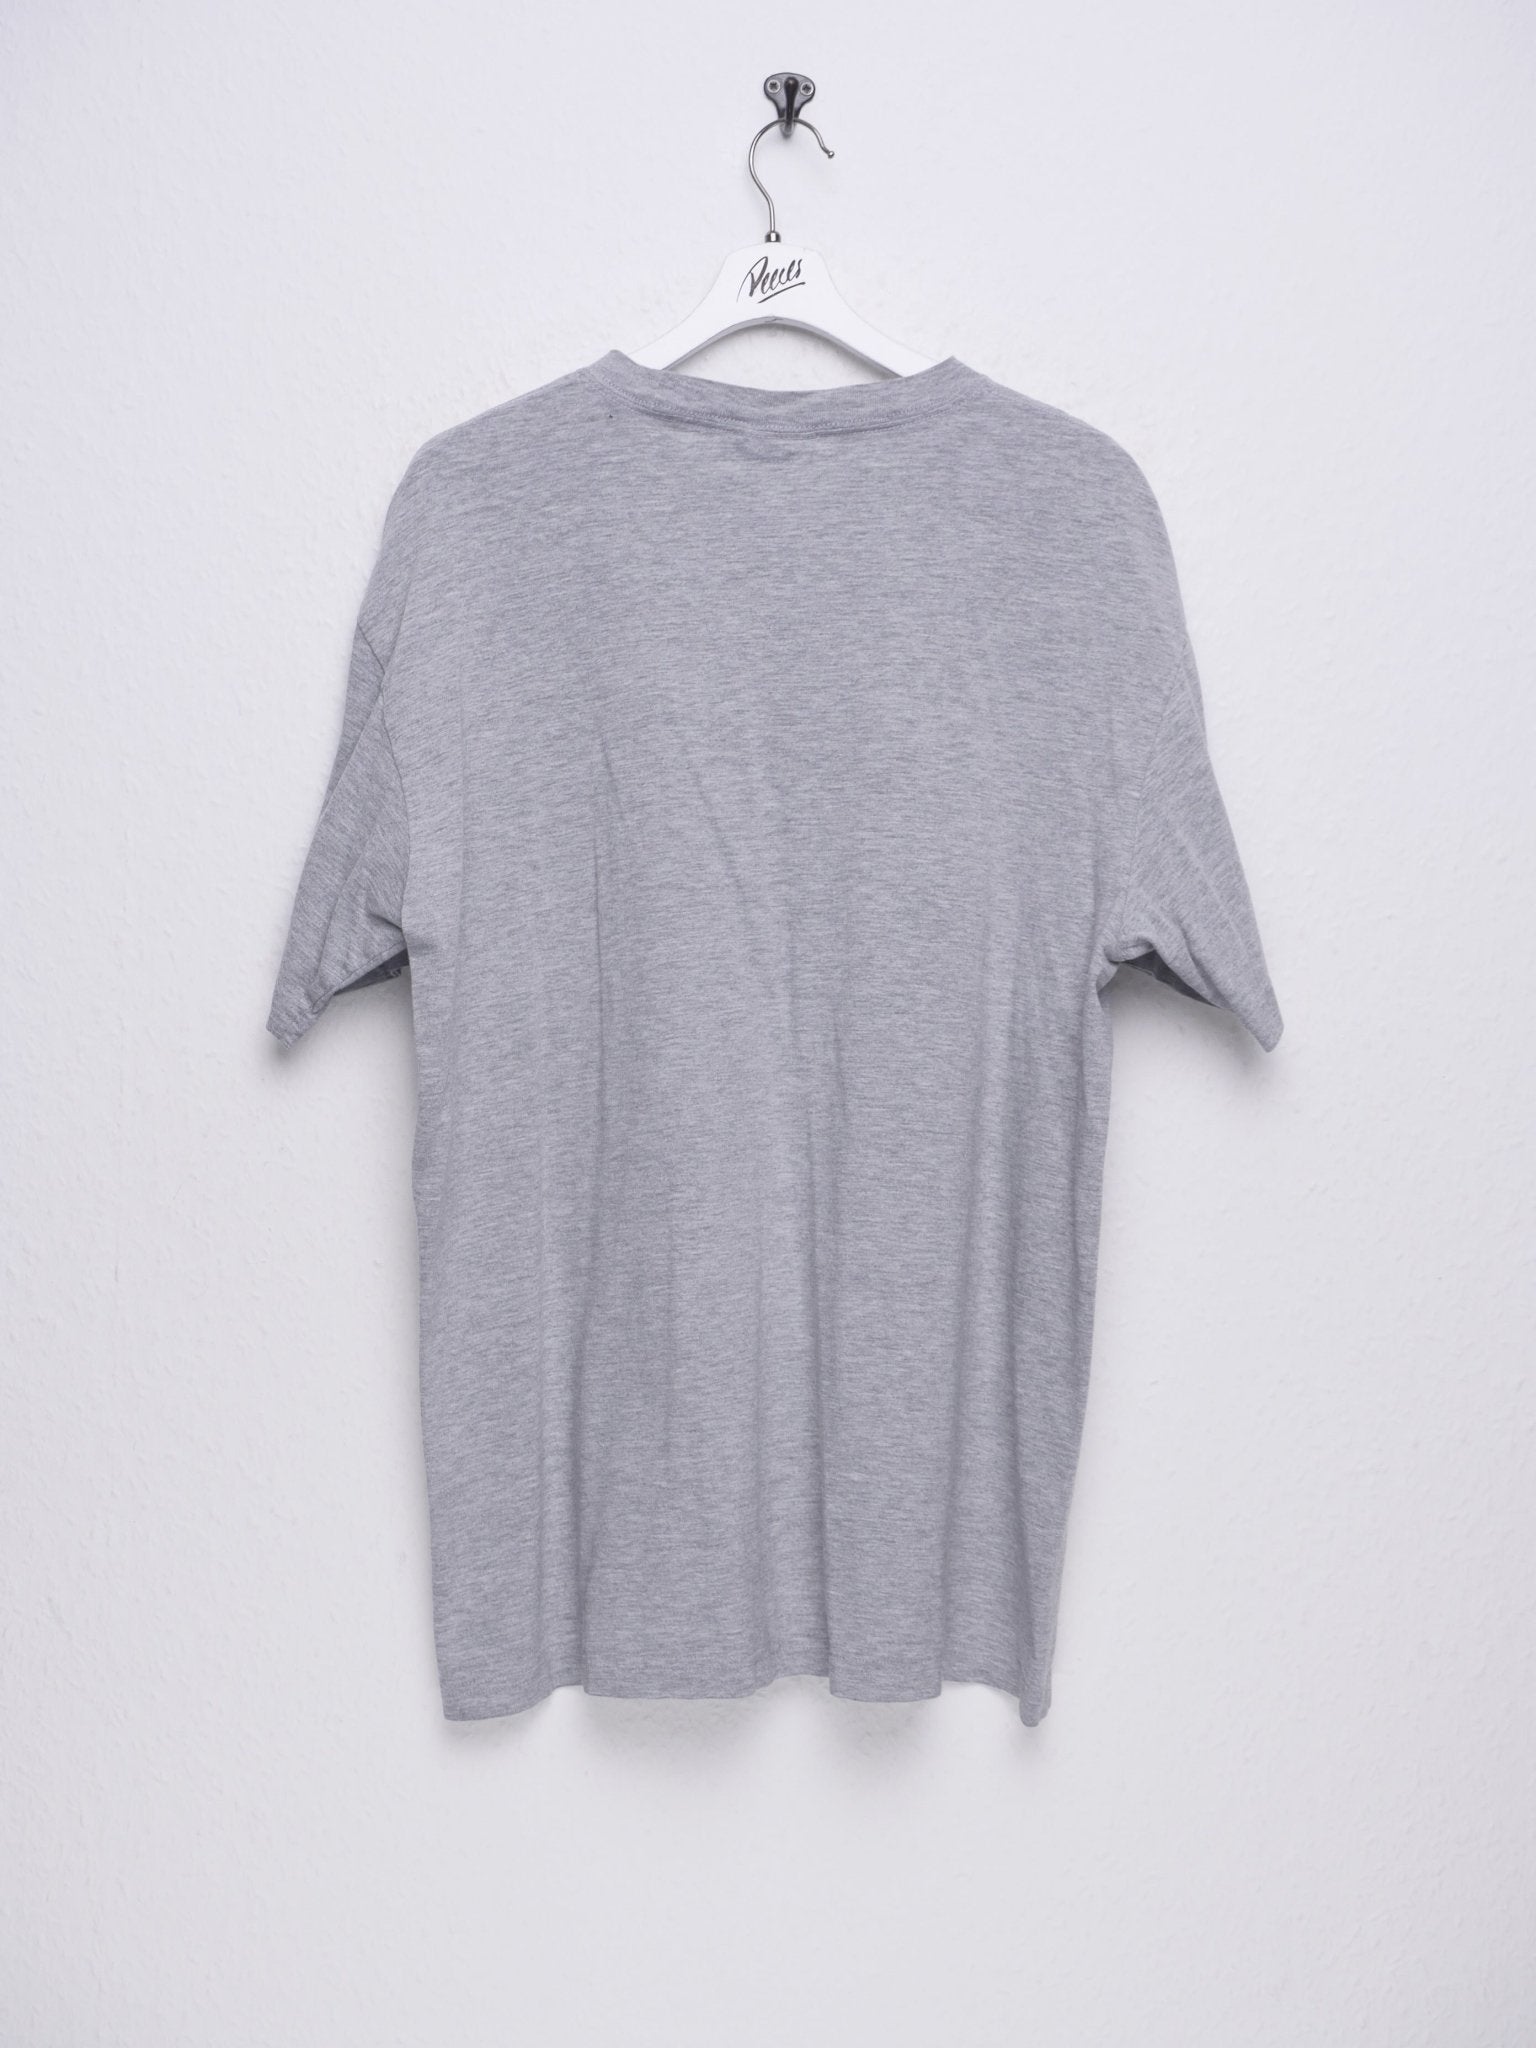 printed Indiana grey Shirt - Peeces